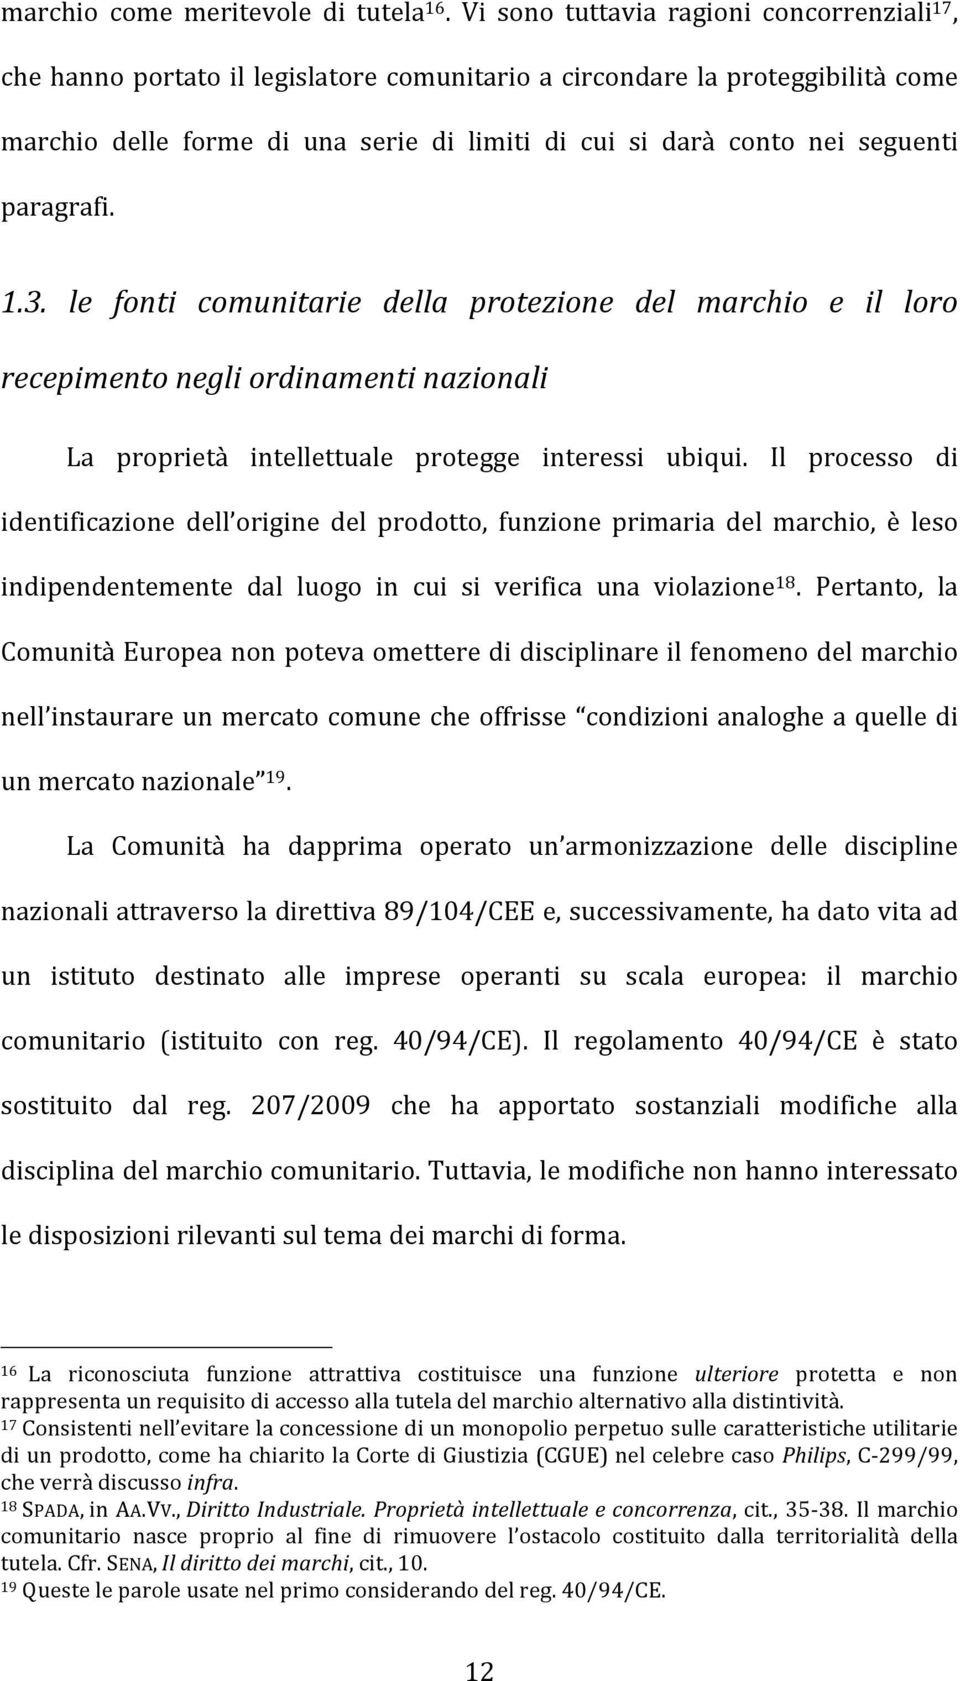 seguenti paragrafi. 1.3. le fonti comunitarie della protezione del marchio e il loro recepimento negli ordinamenti nazionali La proprietà intellettuale protegge interessi ubiqui.